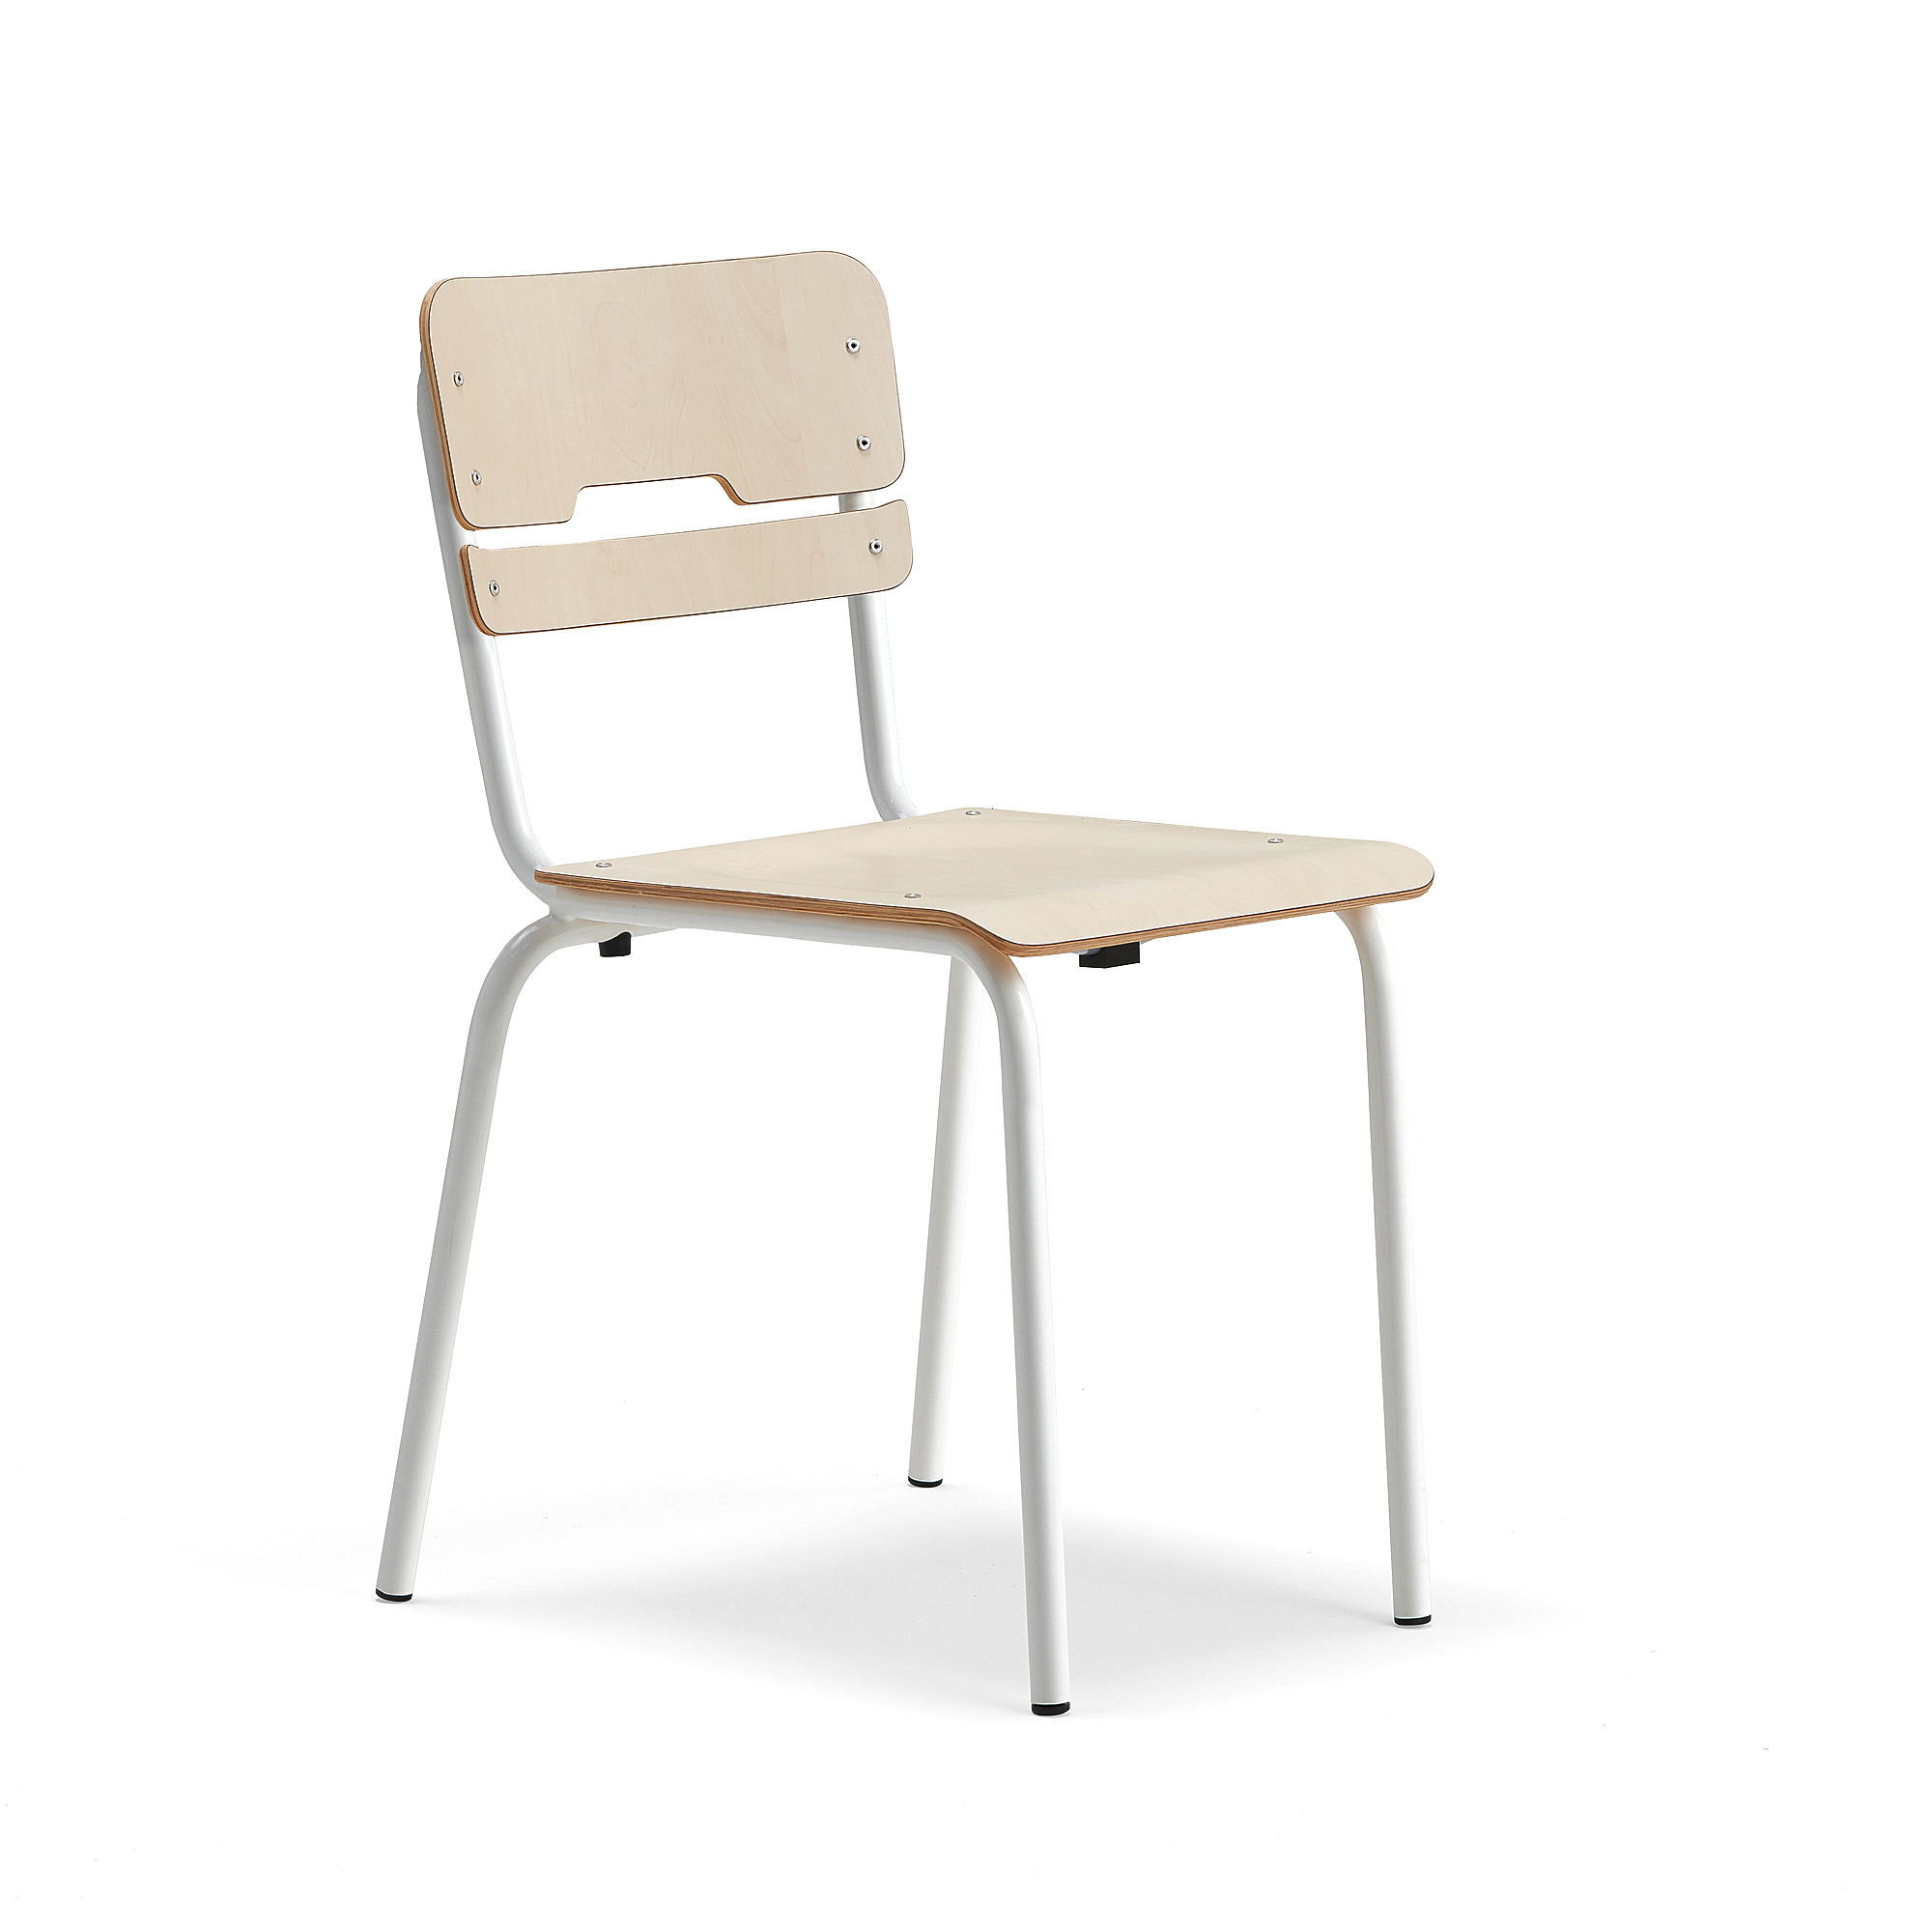 Školní židle SCIENTIA, sedák 390x390 mm, výška 460 mm, bílá/bříza